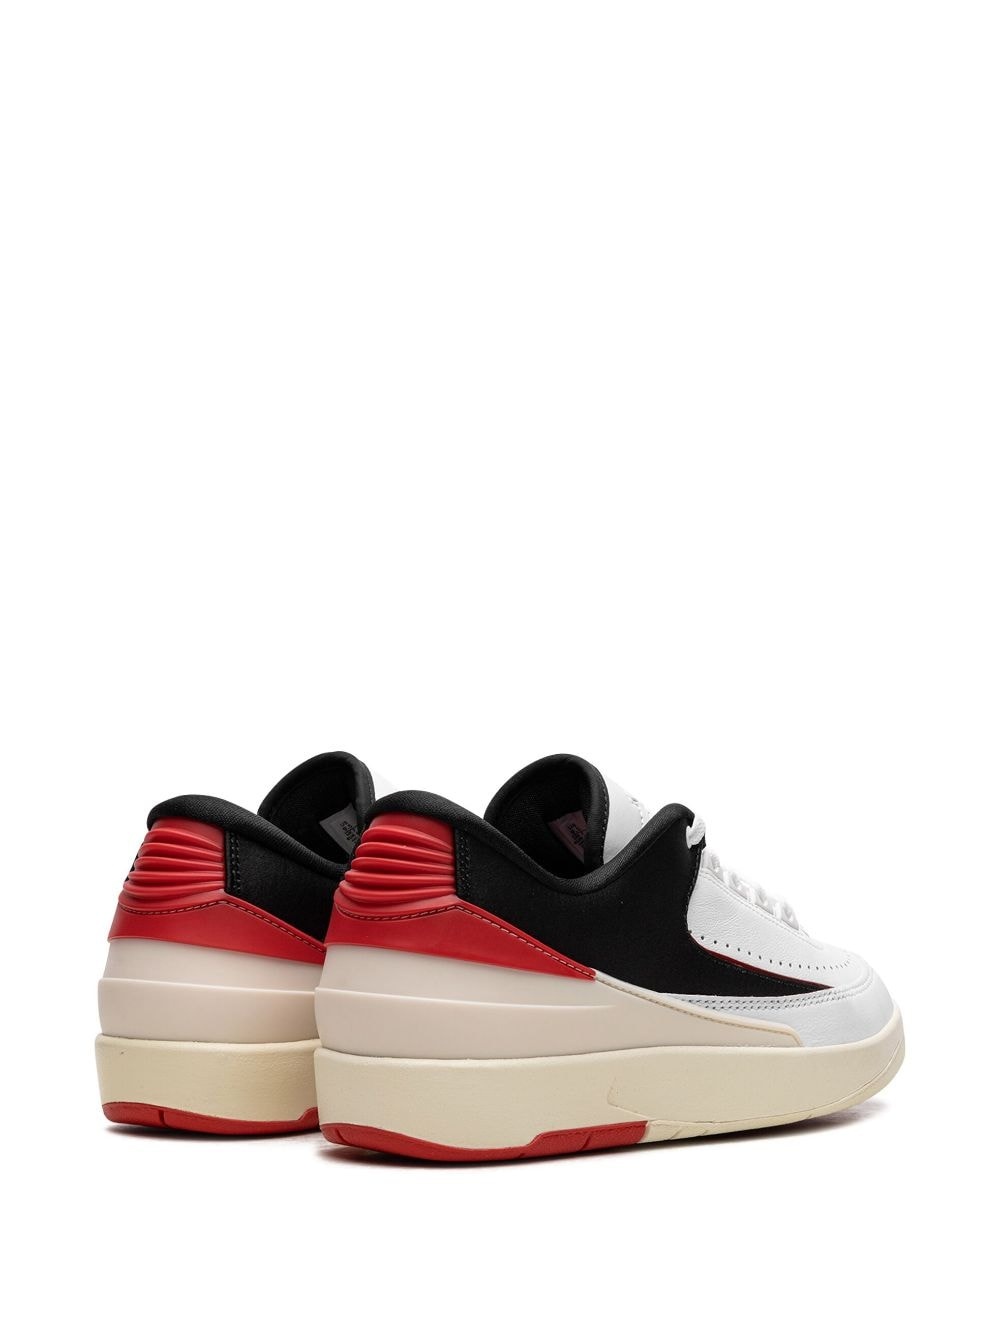 Air Jordan 2 Low "Chicago Twist" sneakers - 4